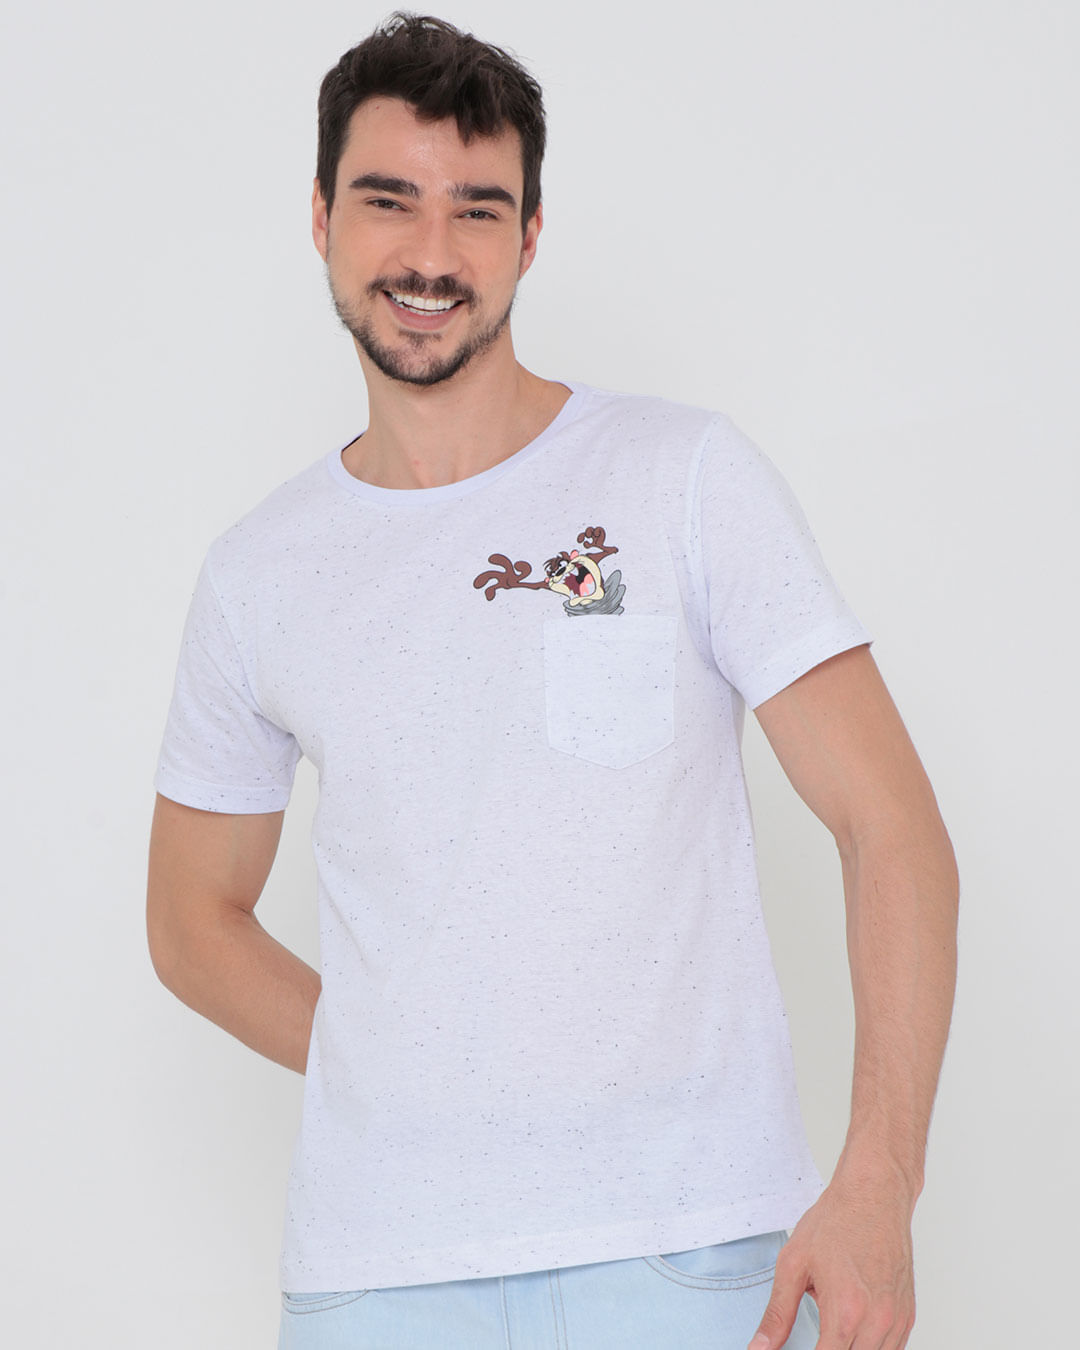 Camiseta-Estampa-Taz-Mania-Looney-Tunes-Banca